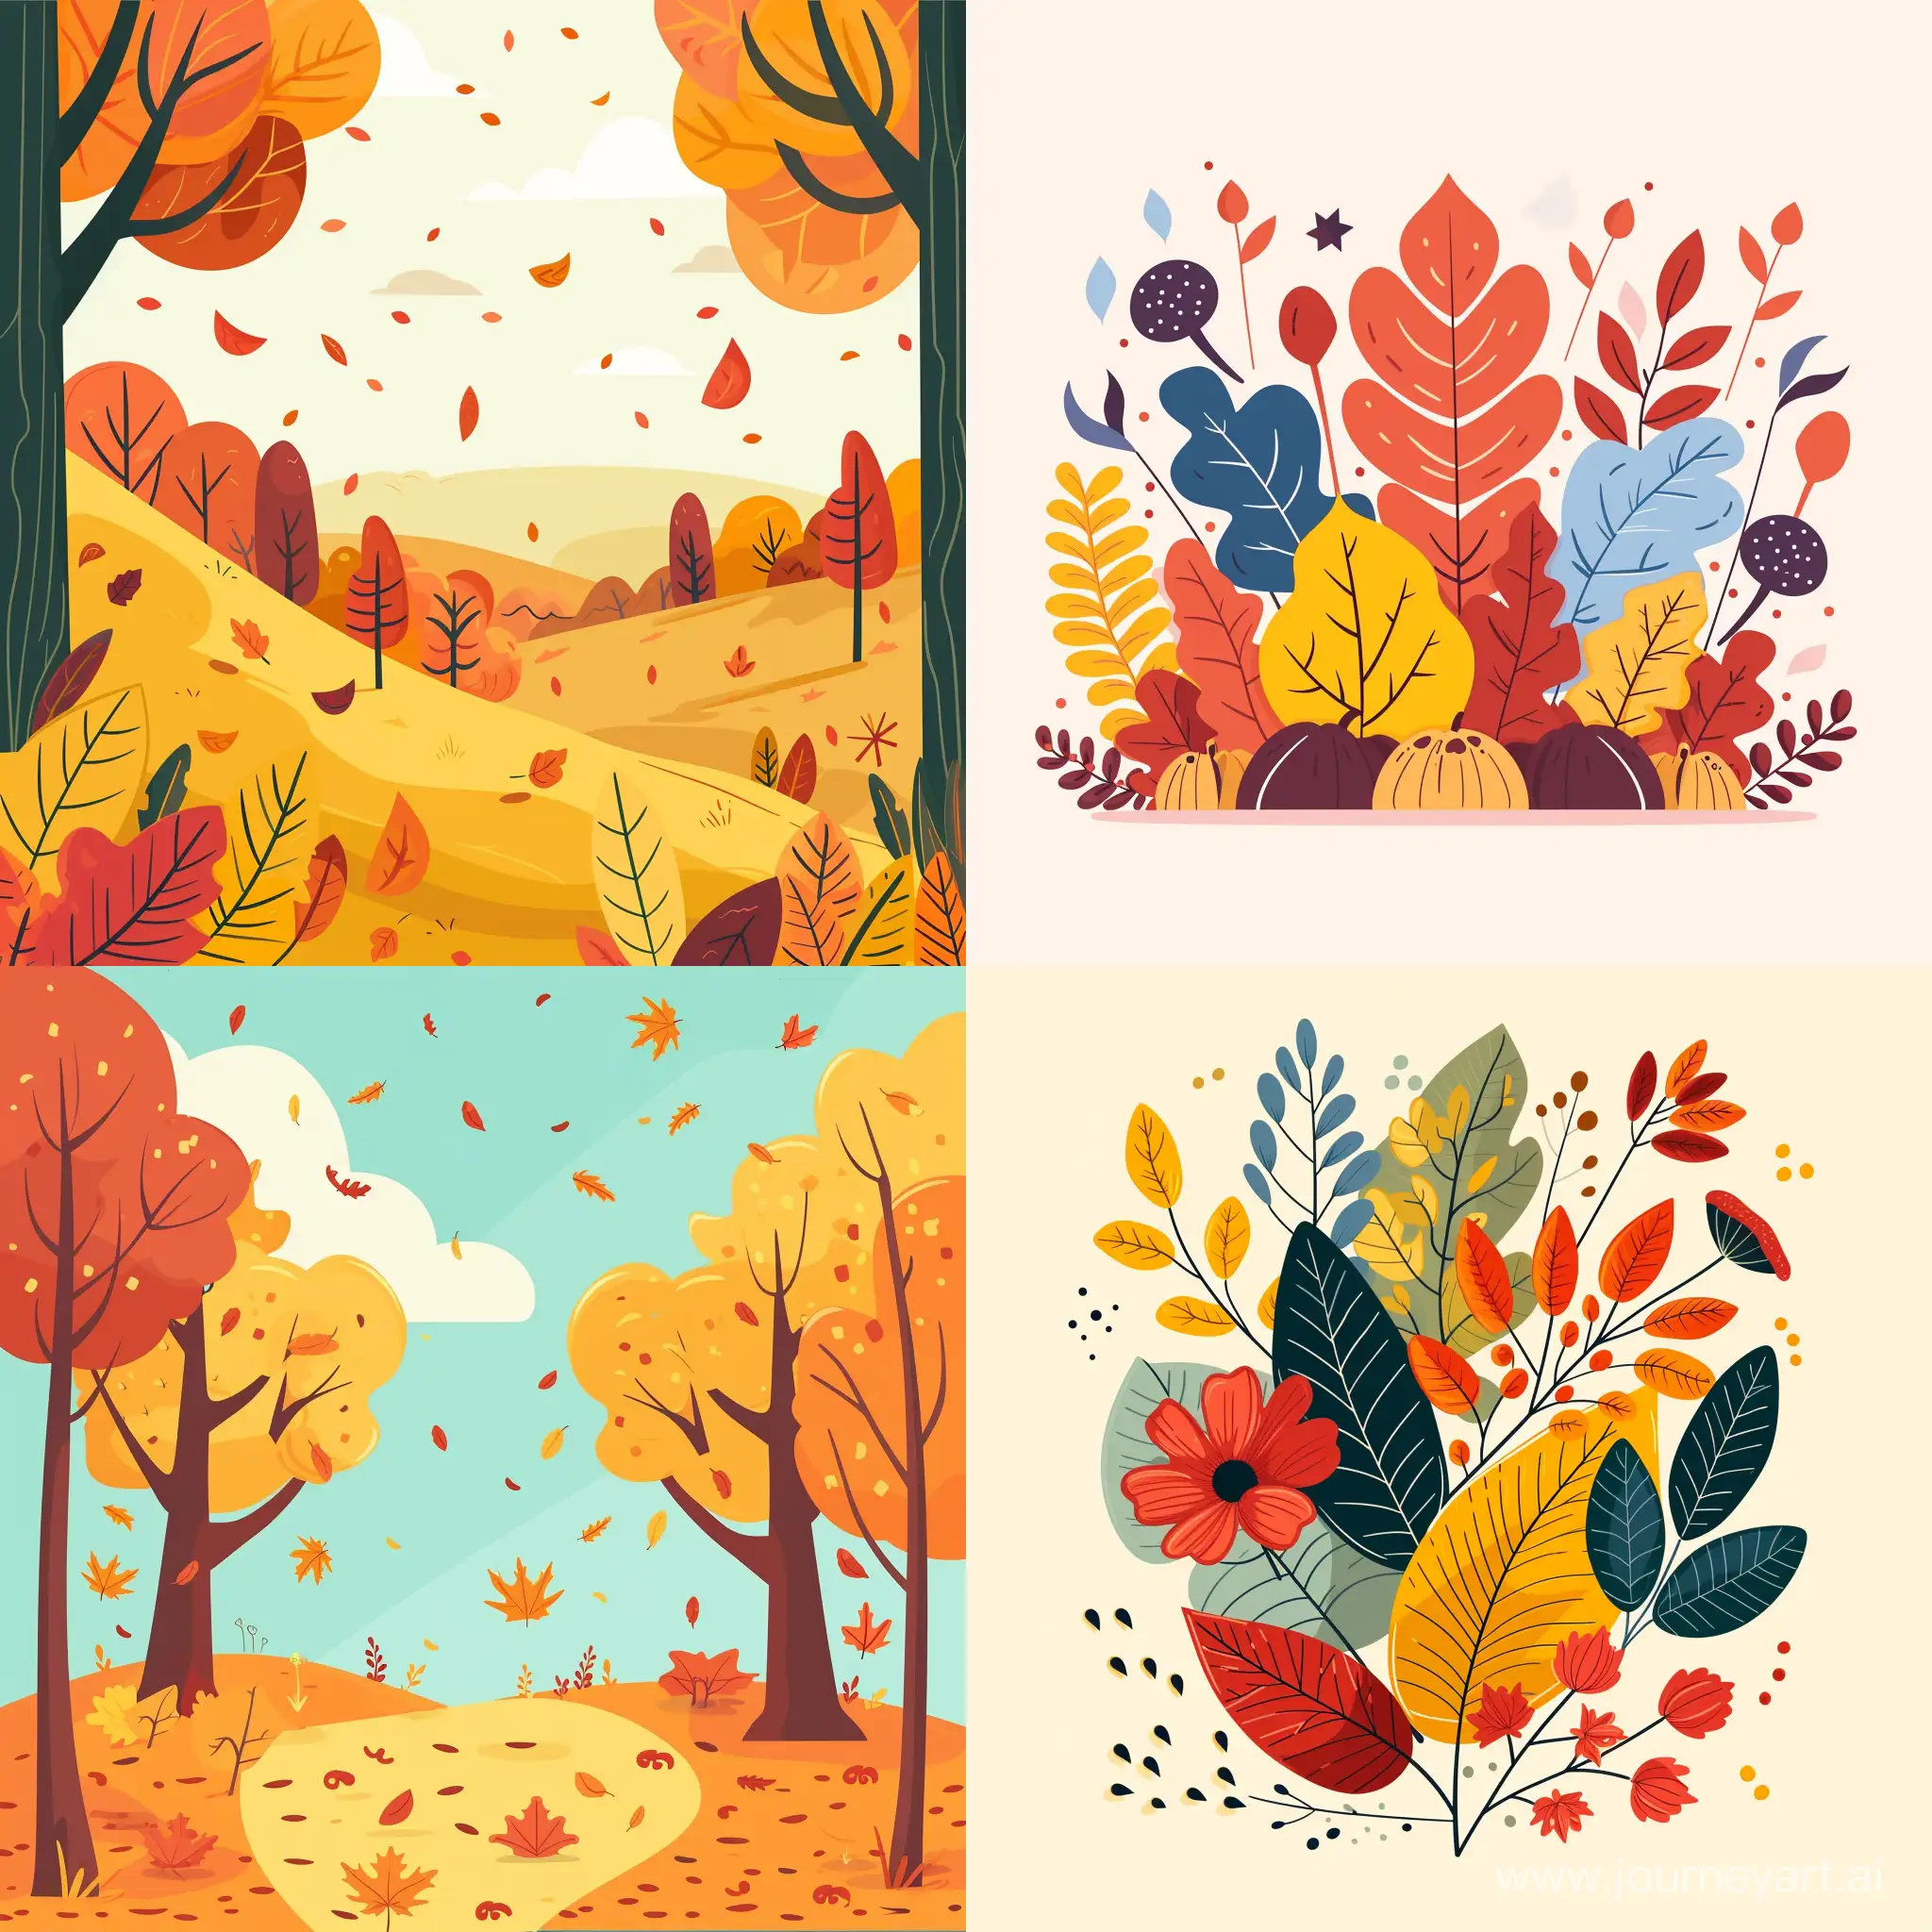 beautiful autumn illustration in flat style